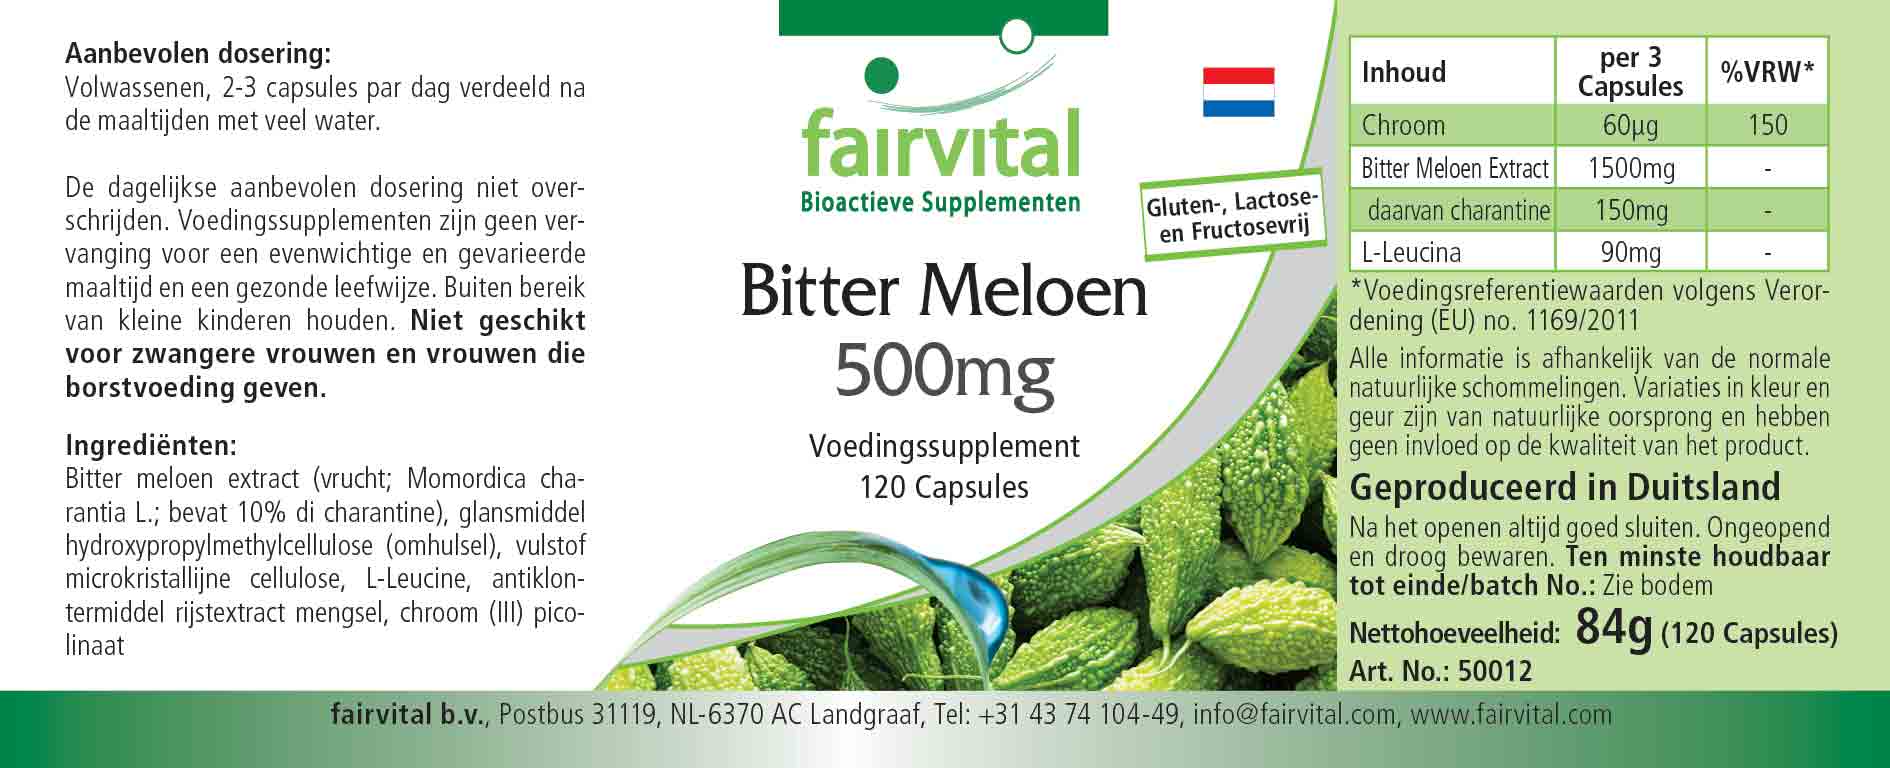 Bittermelone 500mg mit Chrom - 120 Kapseln - Sale - MHD 05/25